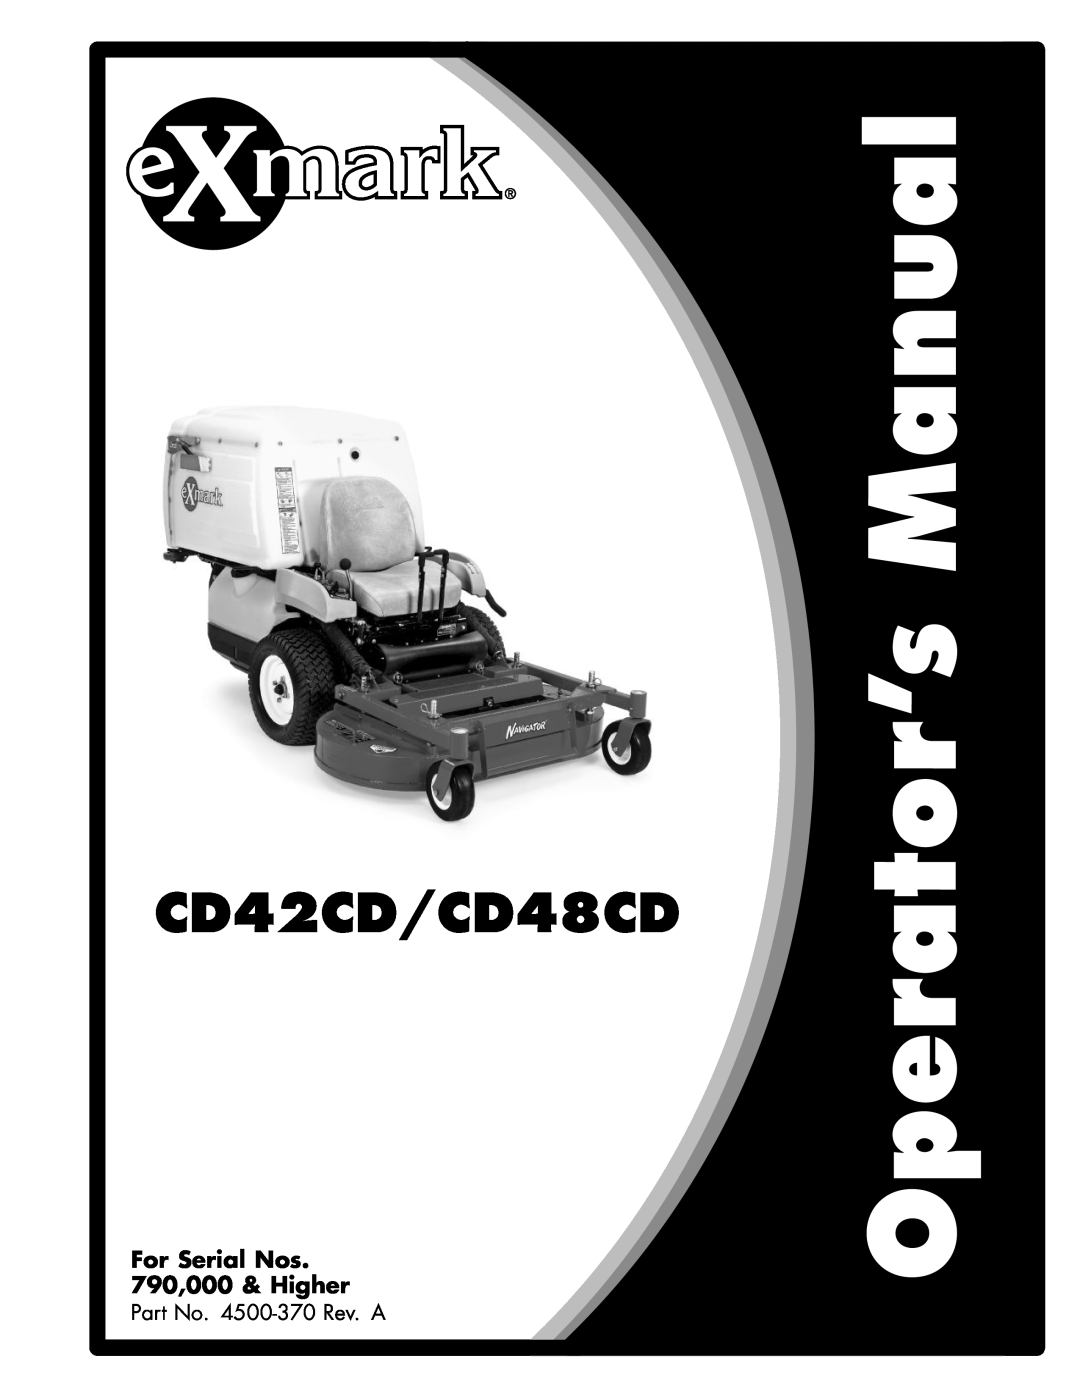 Exmark 4500-370 manual CD42CD/CD48CD, For Serial Nos 790,000 & Higher 